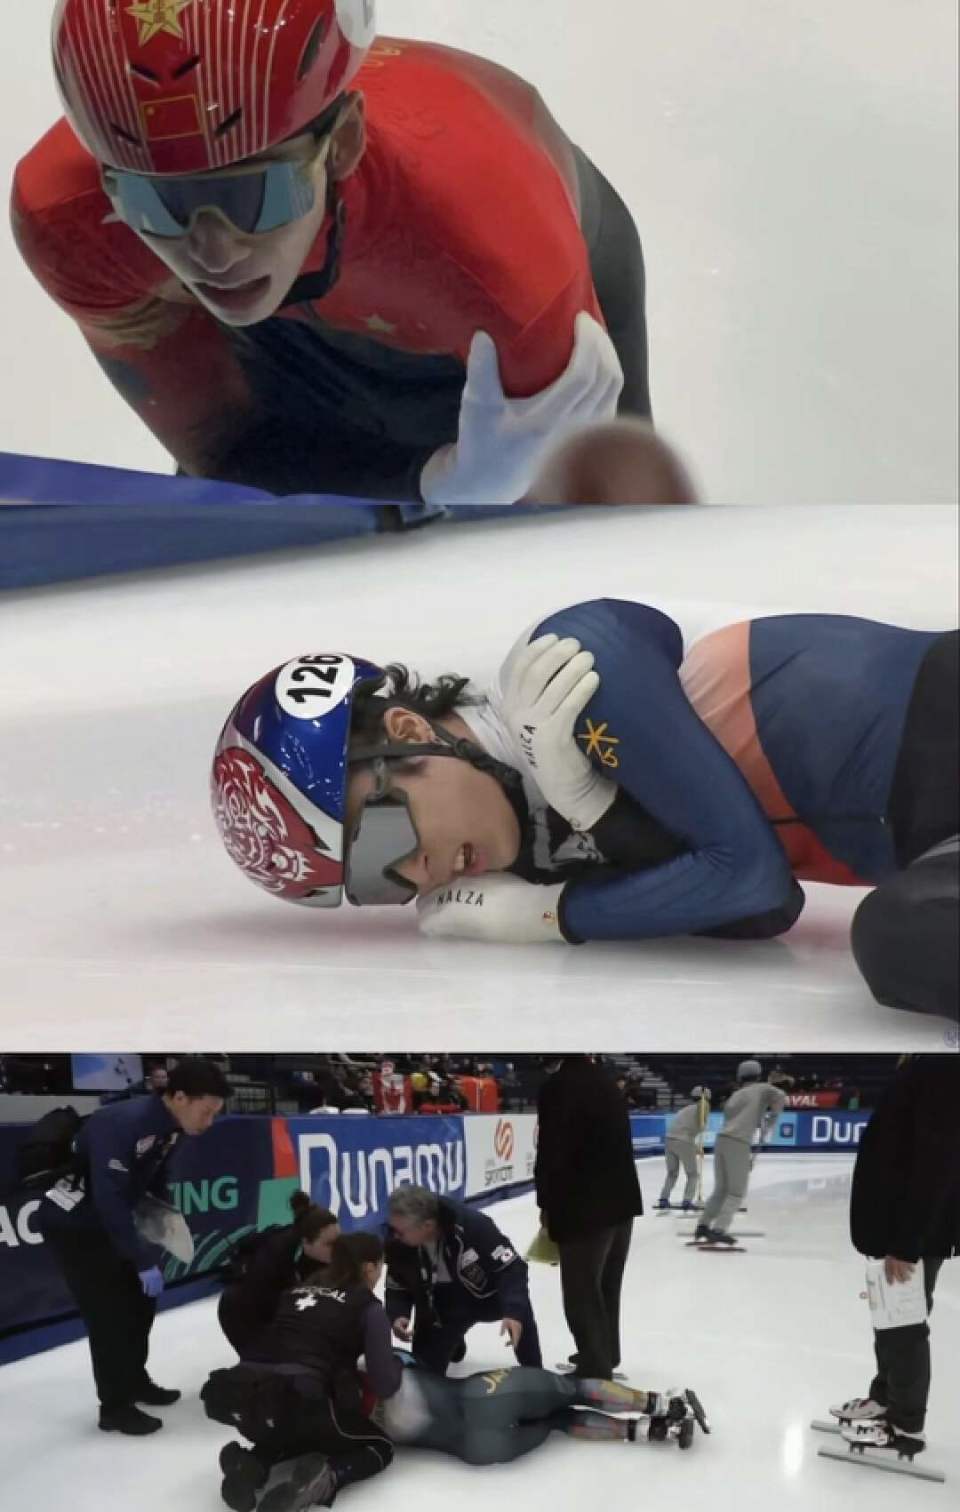 短道速滑巨星被冰刀割伤,伤口近20公分,中国队心有余悸